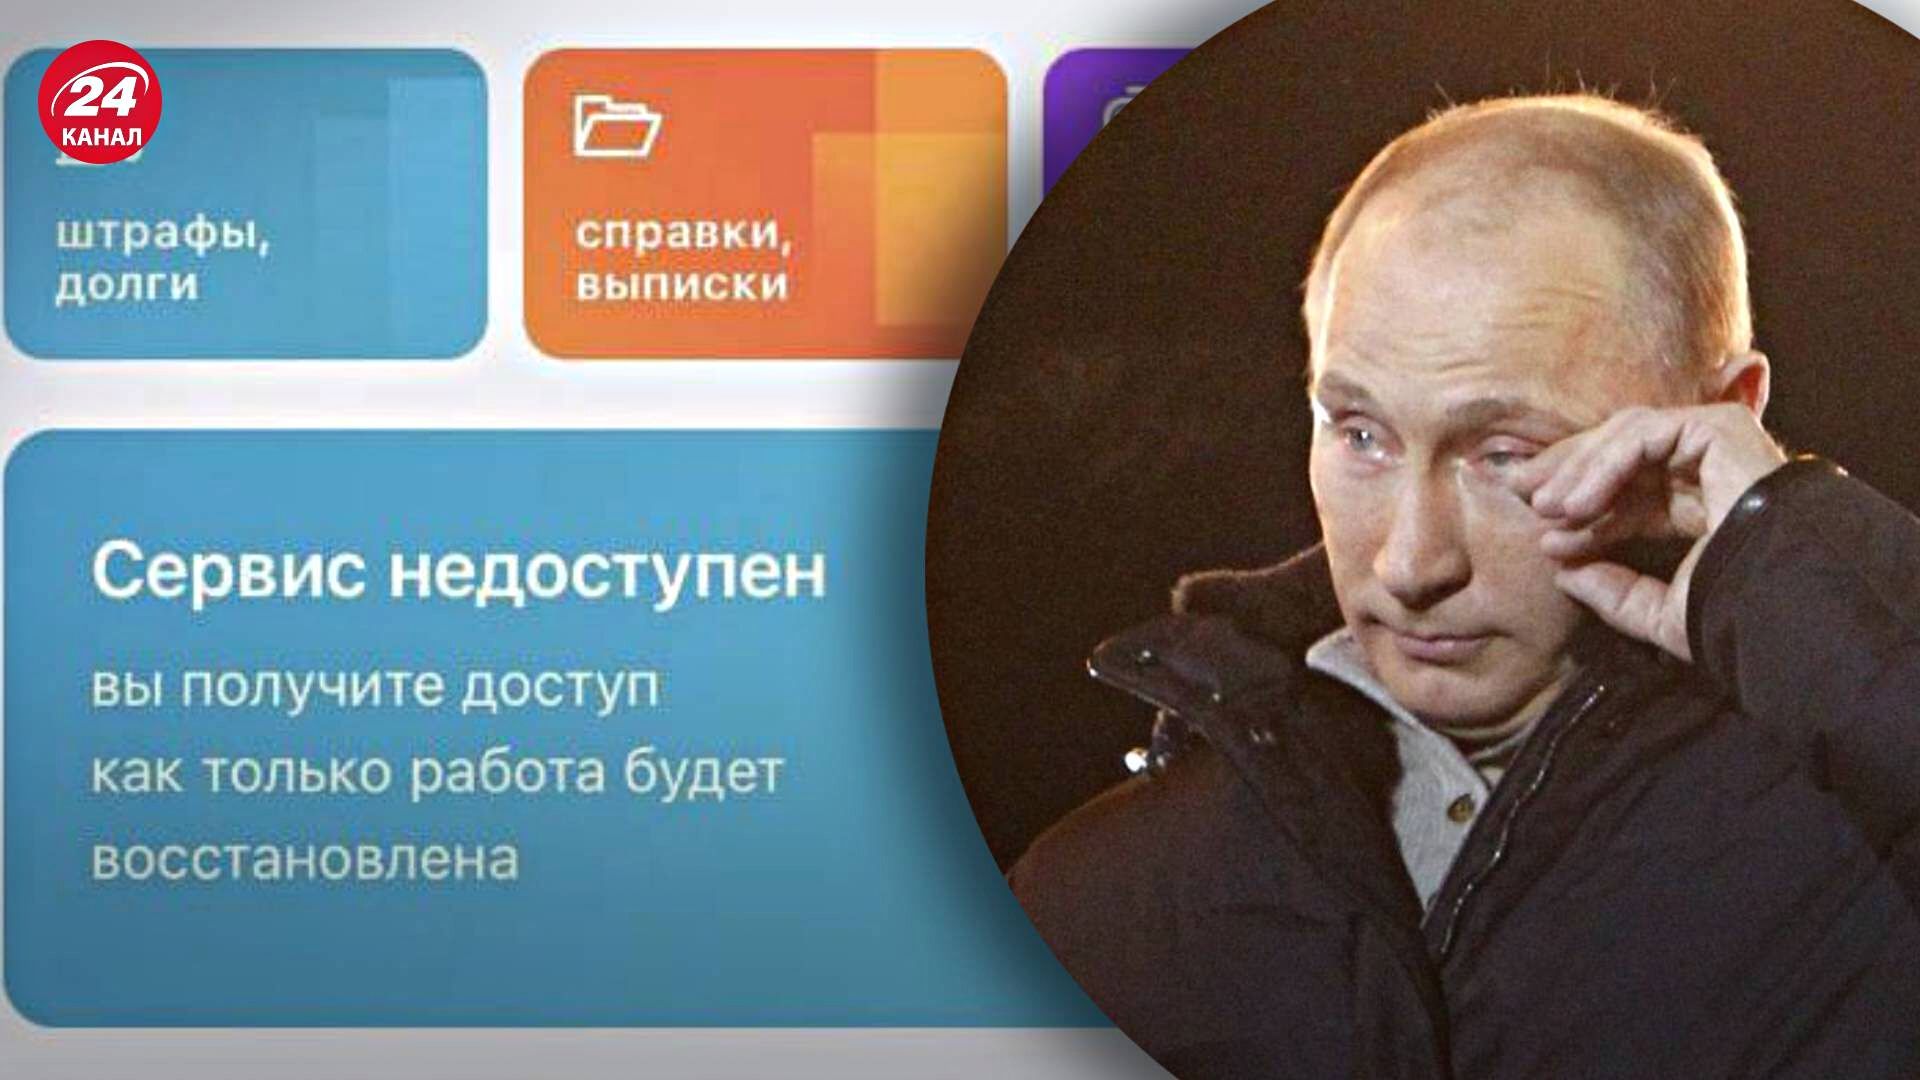 Сайт госуслуг России перестал работать после информации об онлайн-повестках.